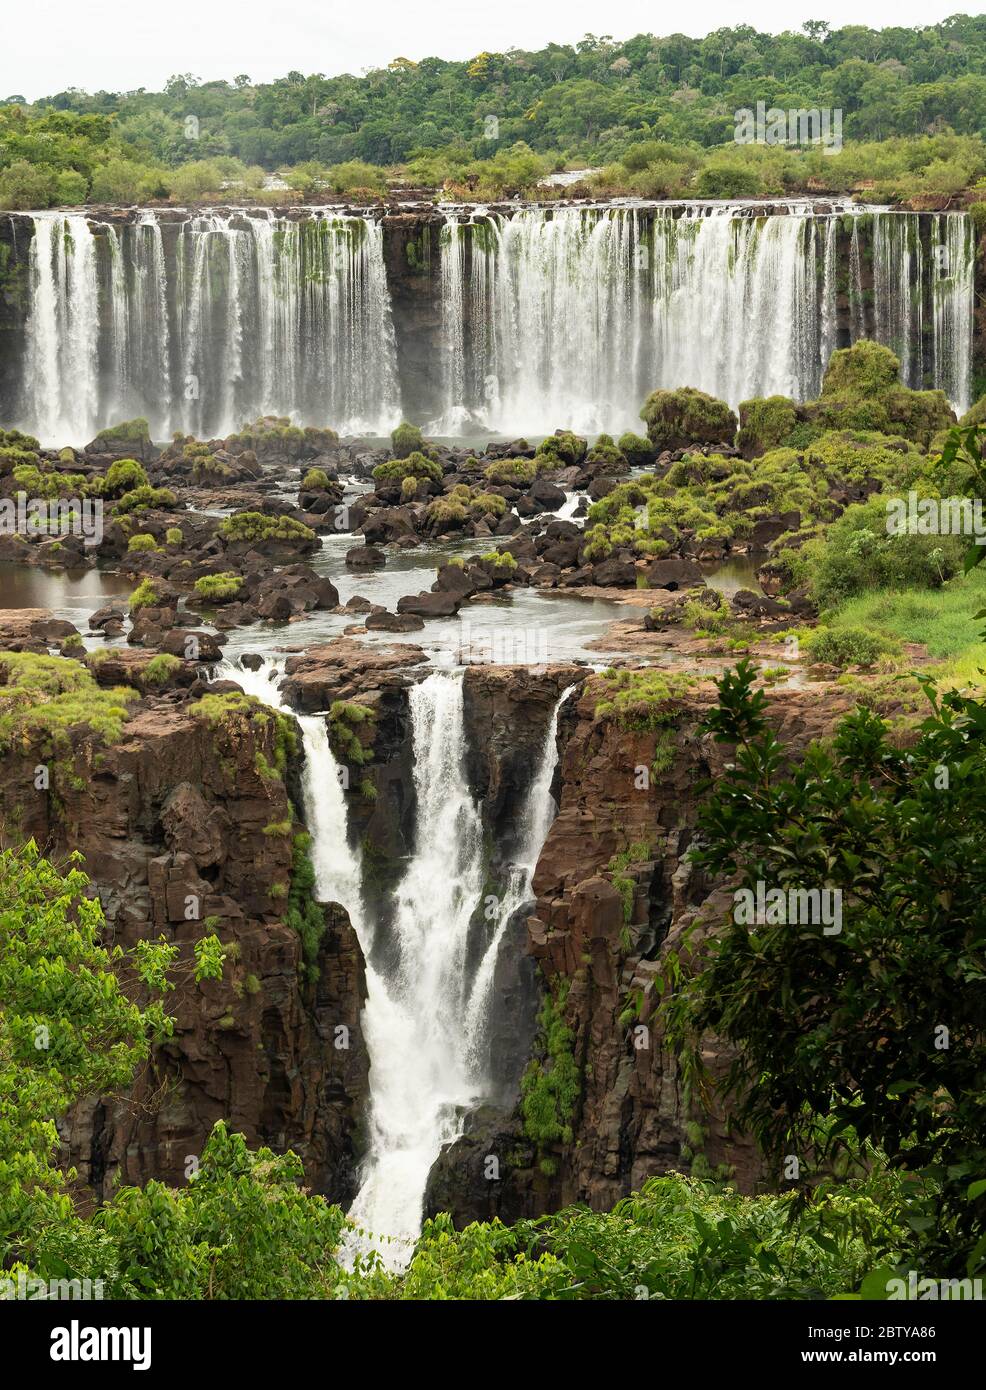 Chutes d'Iguazu, Brésil, face aux chutes argentines, site classé au patrimoine mondial de l'UNESCO, Brésil, Amérique du Sud Banque D'Images